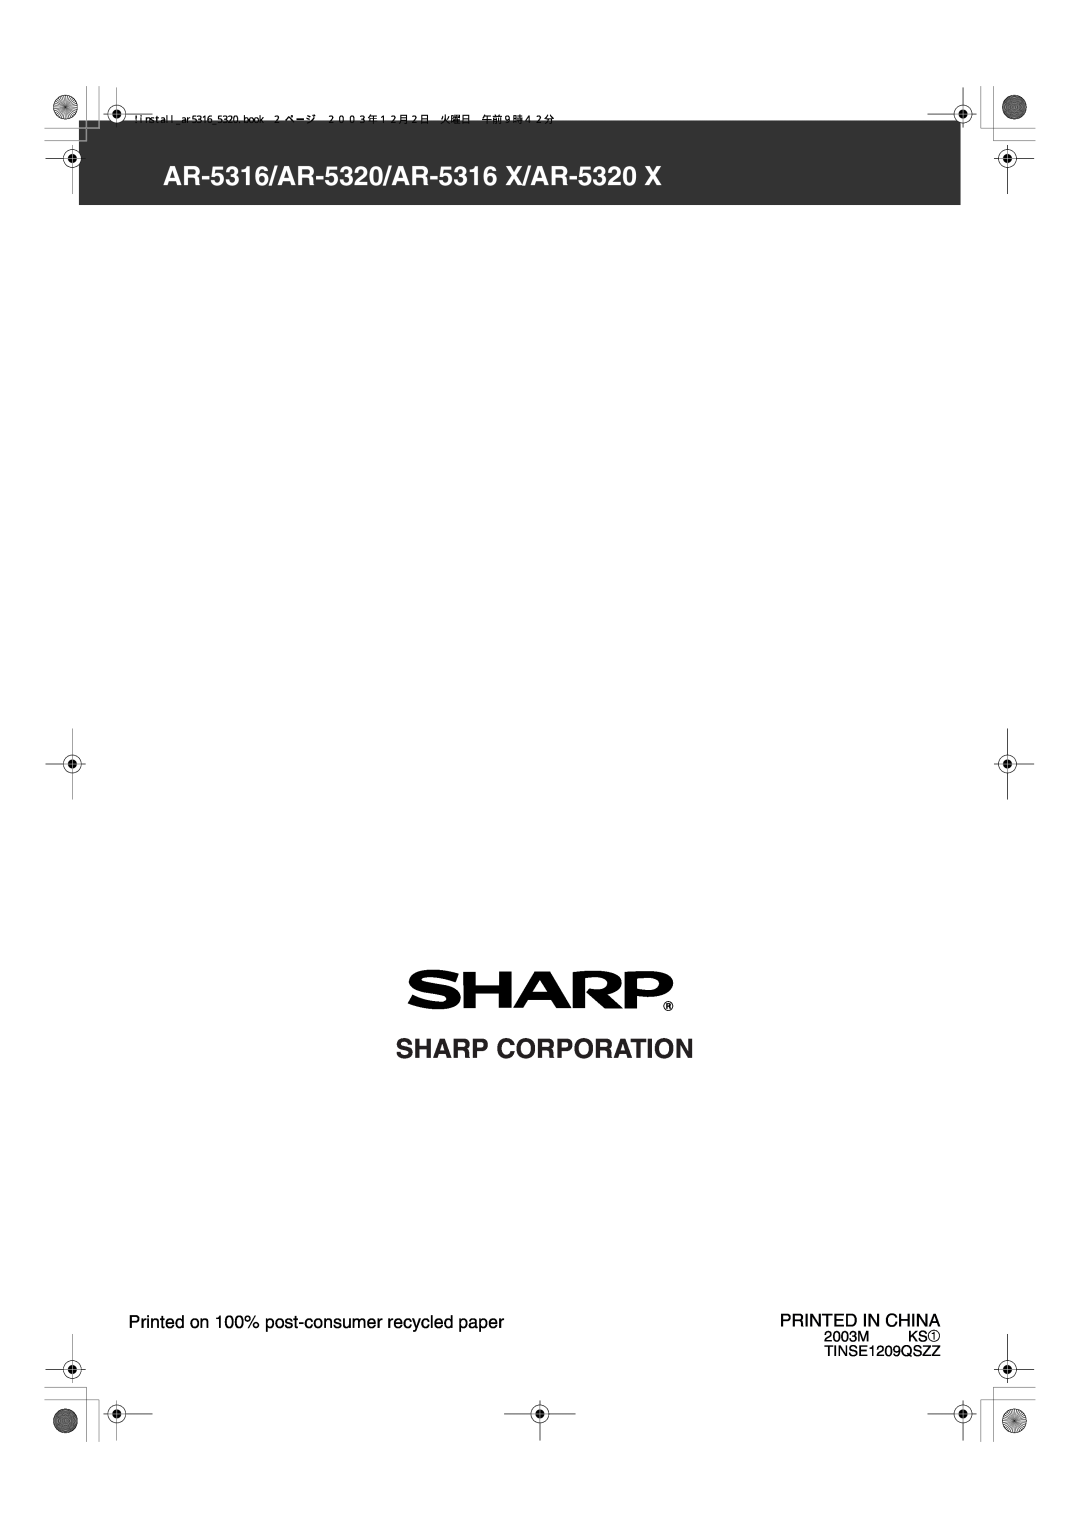 Sharp AR-5320 X Sharp Corporation, AR-5316/AR-5320/AR-5316 X/AR-5320, Printed on 100% post-consumer recycled paper 